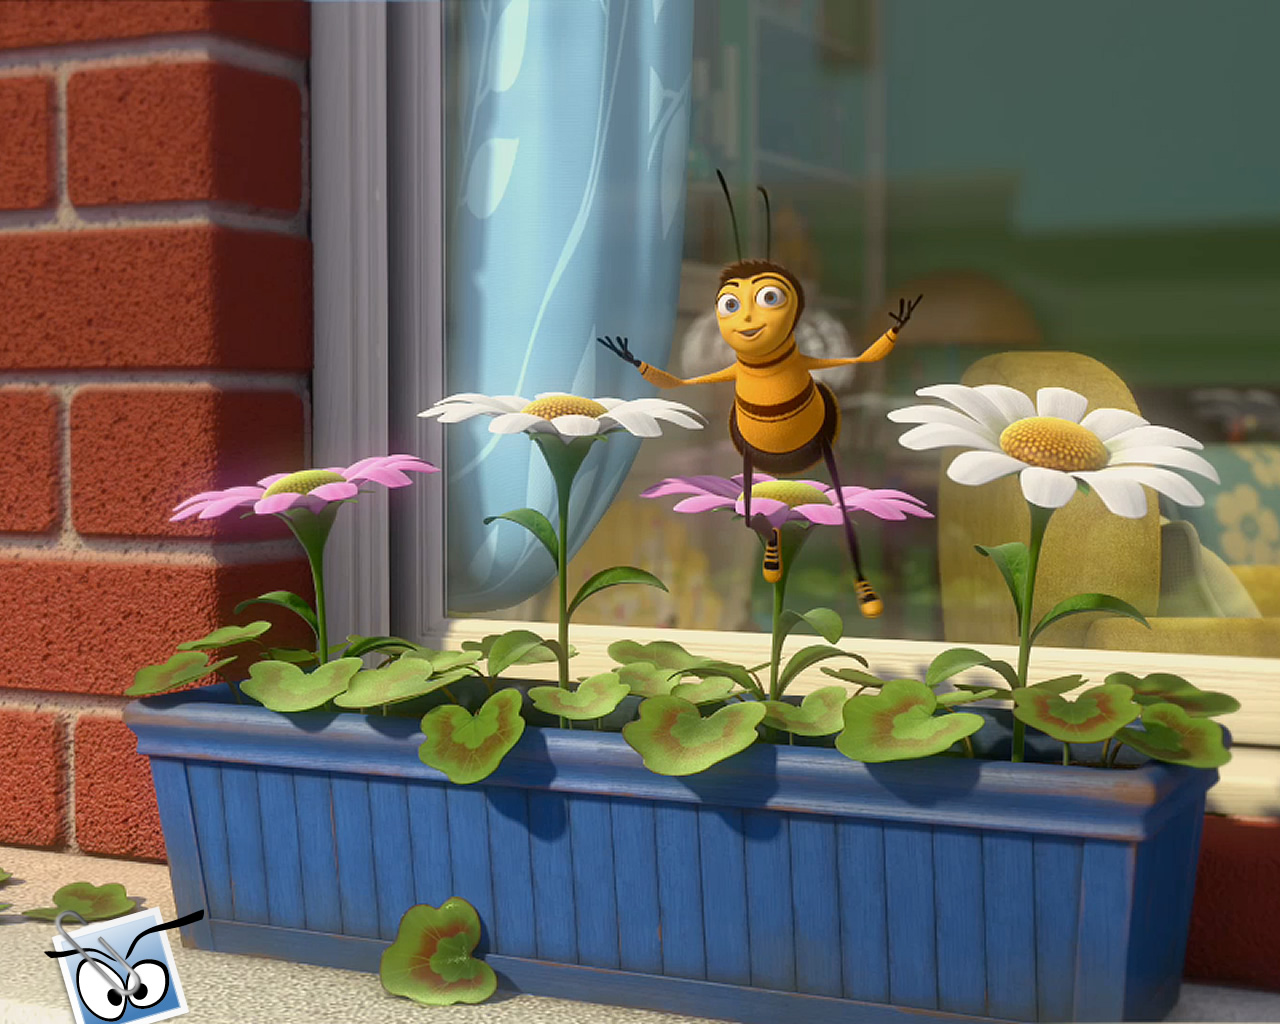 download wallpaper: Bee Movie wallpaper